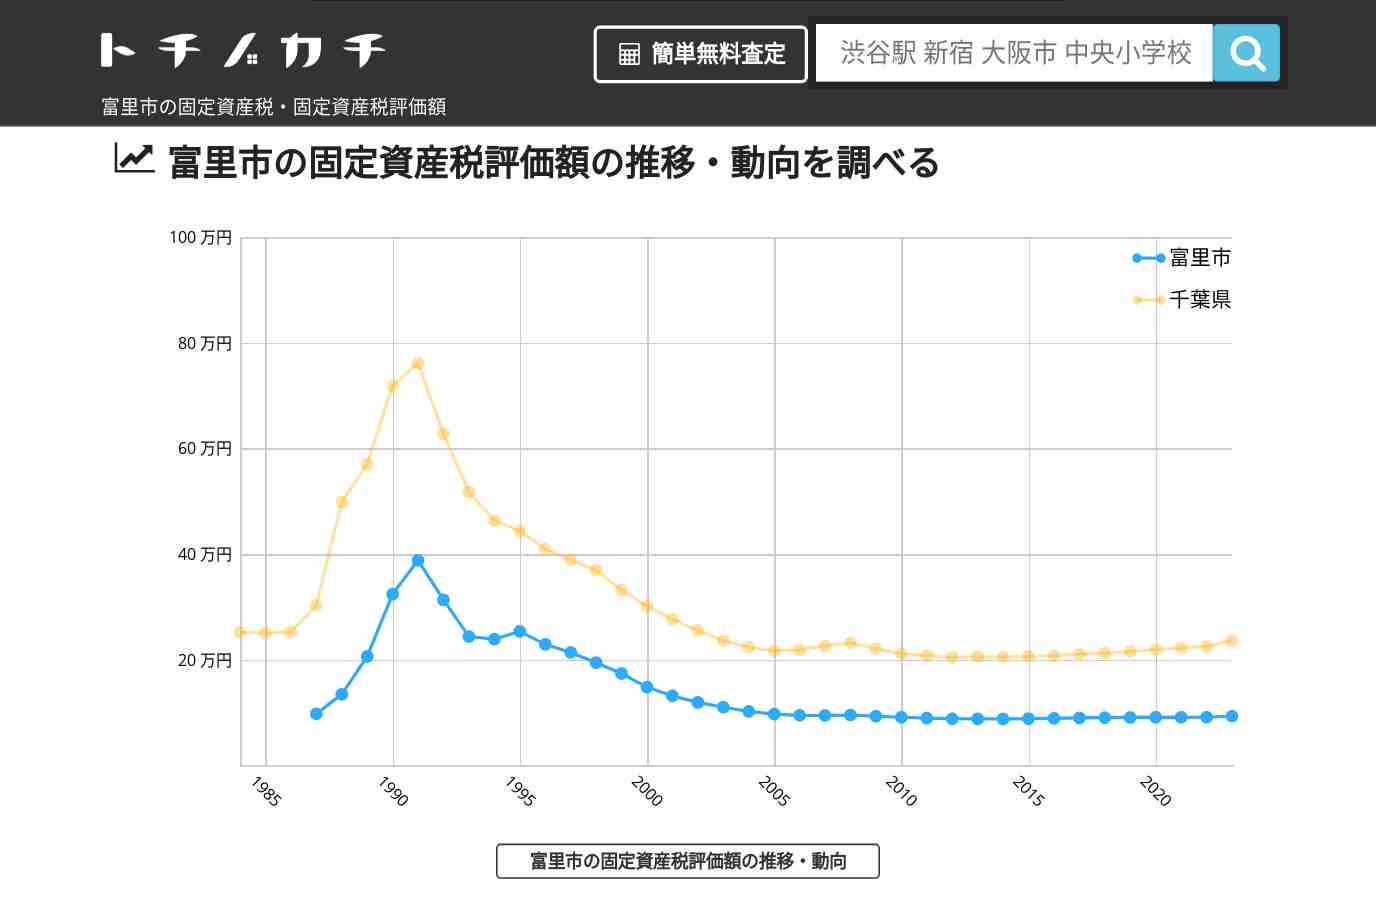 洗心小学校(千葉県 富里市)周辺の固定資産税・固定資産税評価額 | トチノカチ